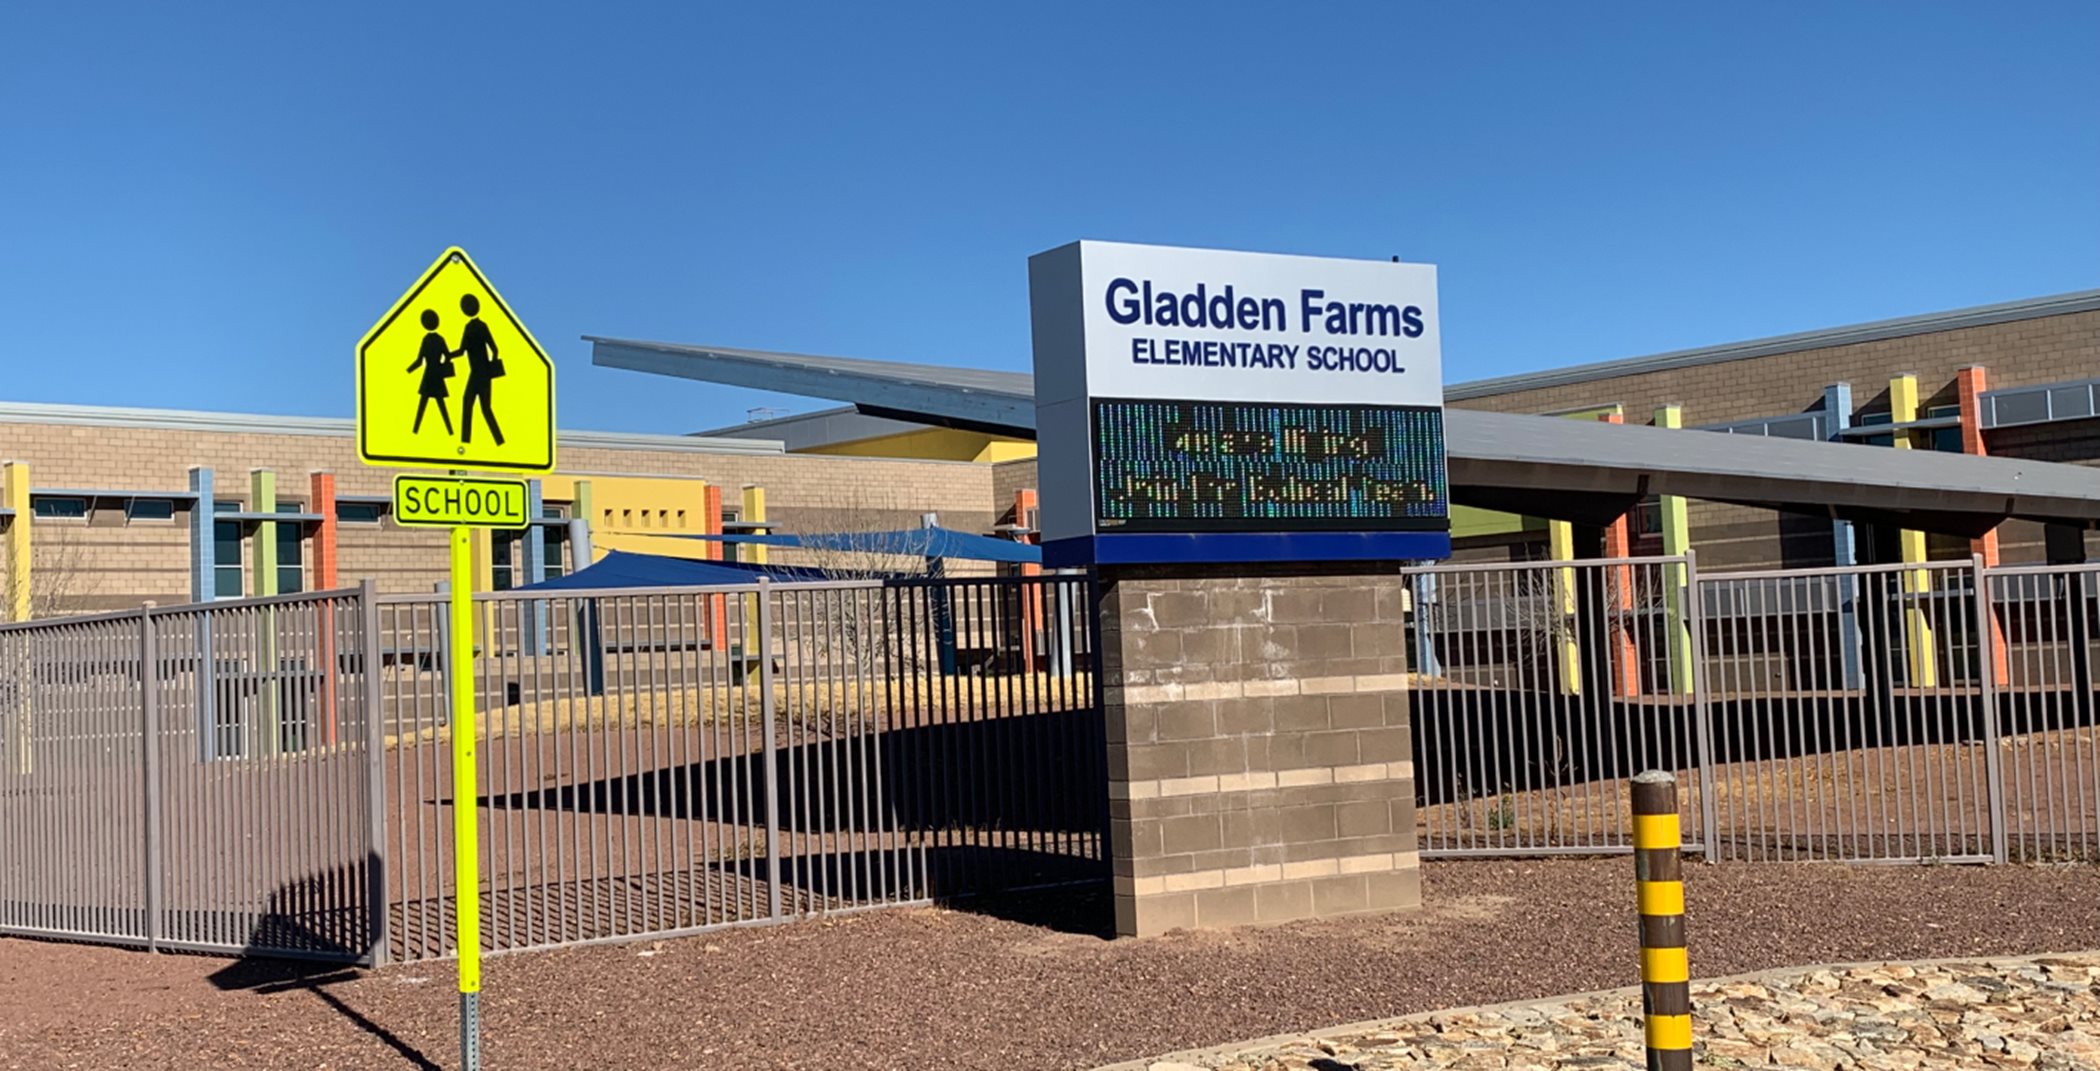 Gladden Farms Elementary School